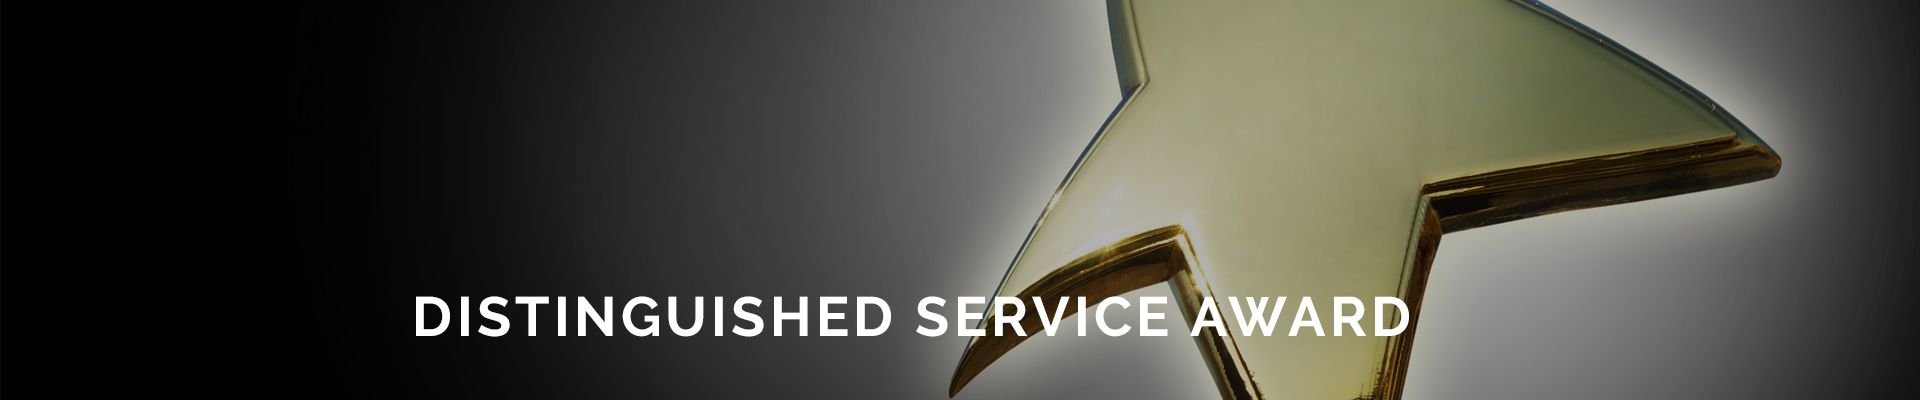 distinguished_service_award_header